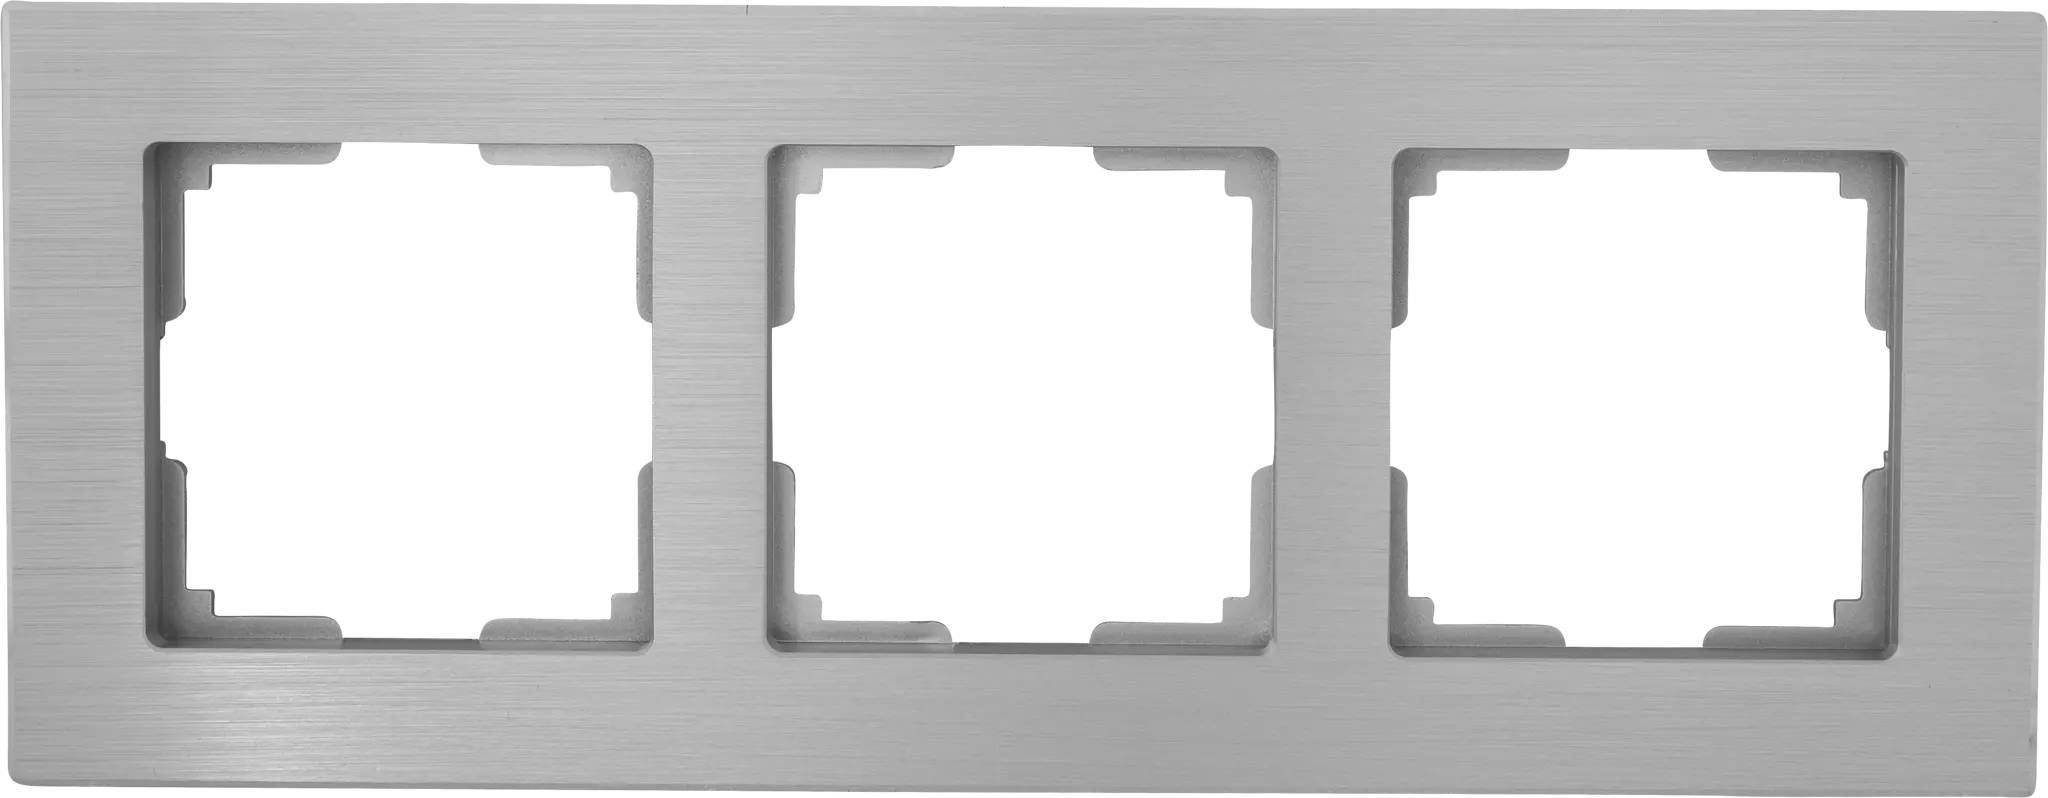 Рамка для розеток и выключателей Werkel Aluminium 3 поста, металл, цвет алюминий рамка для удлинителя ооо ливны электро